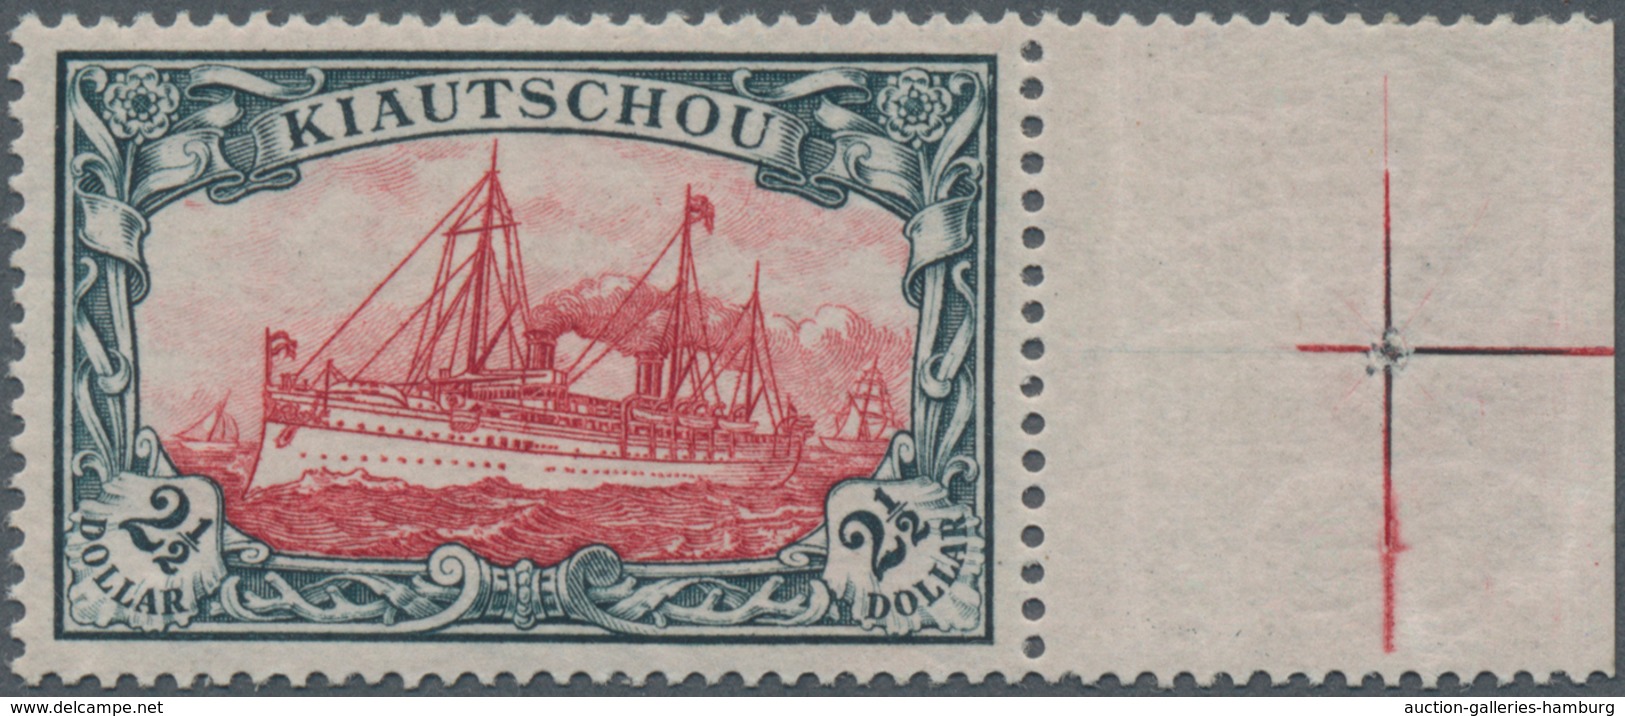 Deutsche Kolonien - Kiautschou: 1905, 2½ Dollar Kaiseryacht, Grünschwarz/dunkelkarmin, 26:17 Zähnung - Kiautschou